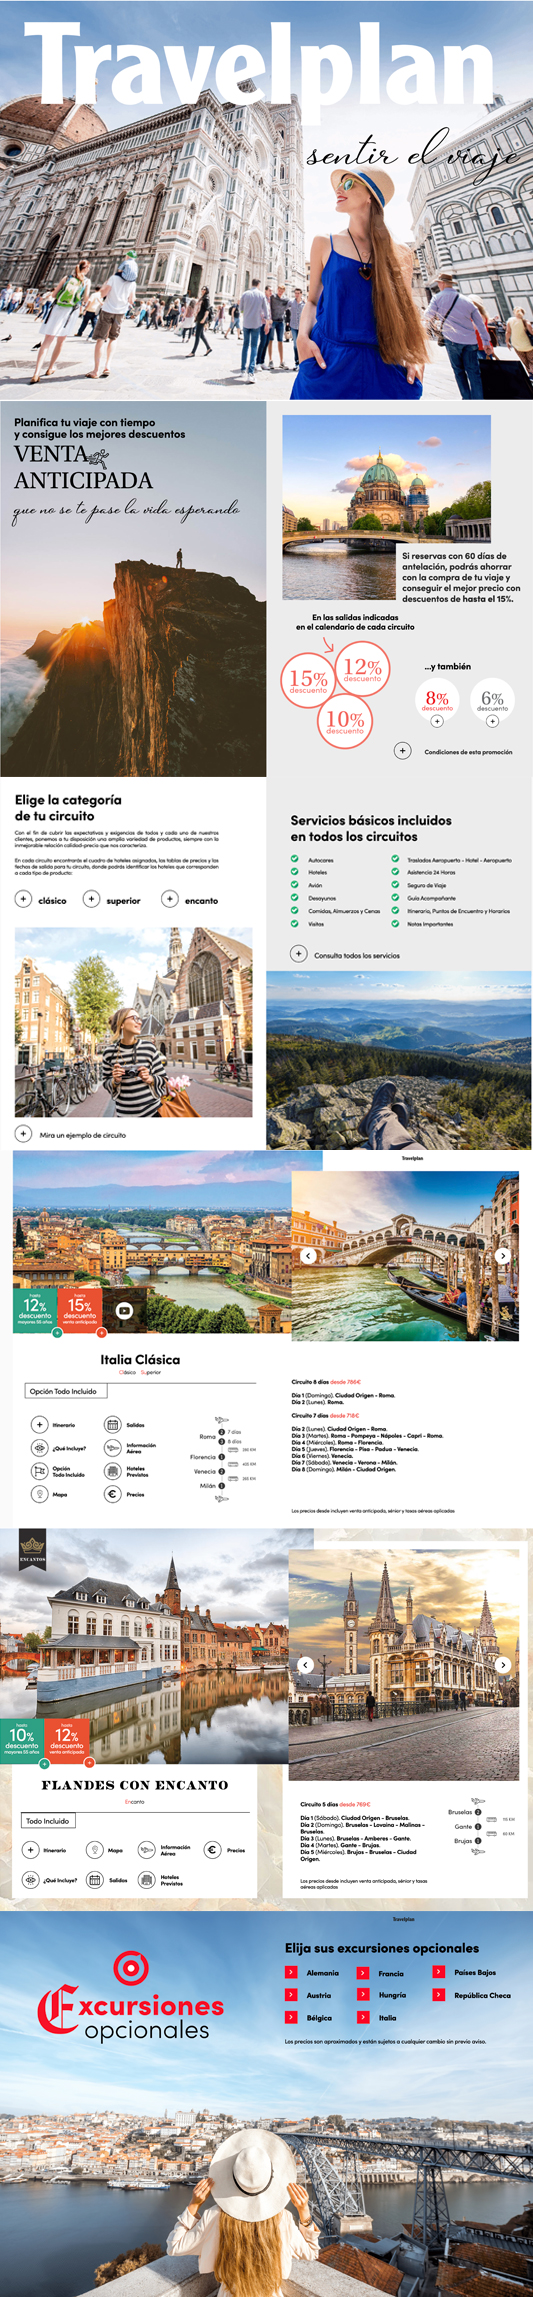 eMagazine Travelplan Circuitos por Europa